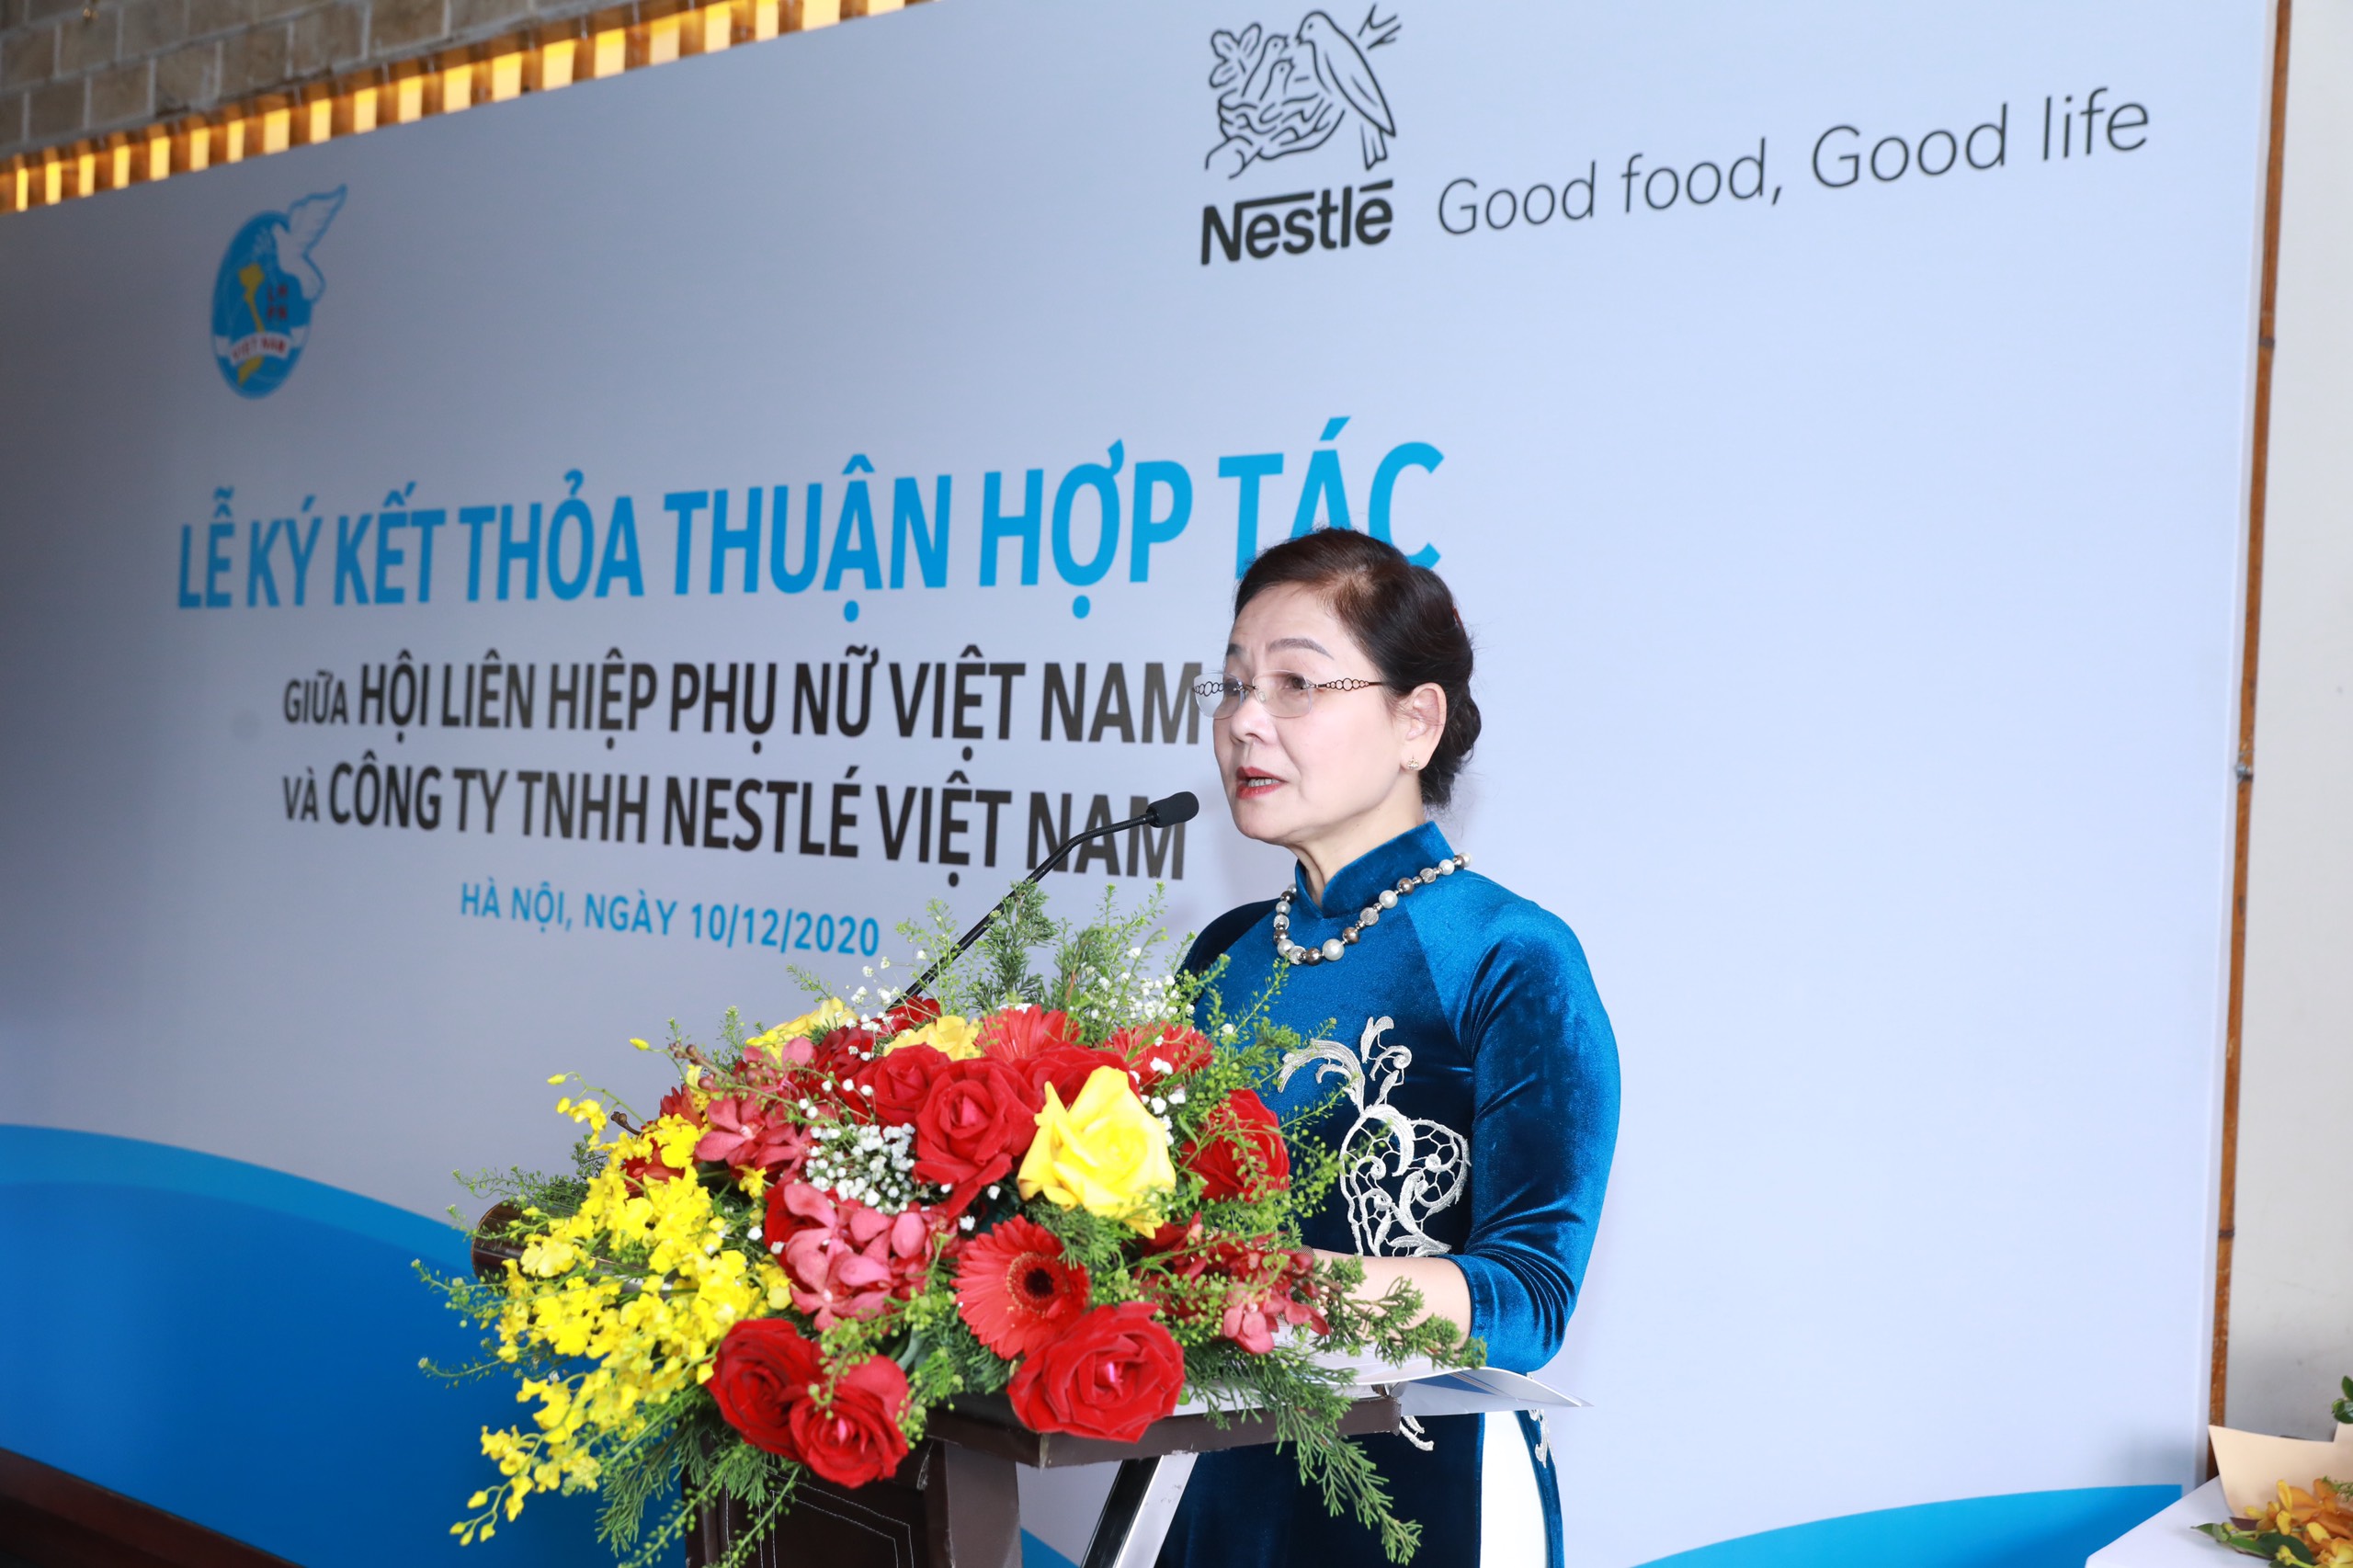 Bà Trần Thị Hương, Phó Chủ tịch Hội LHPNVN phát biểu tại Lễ ký kết thỏa thuận hợp tác